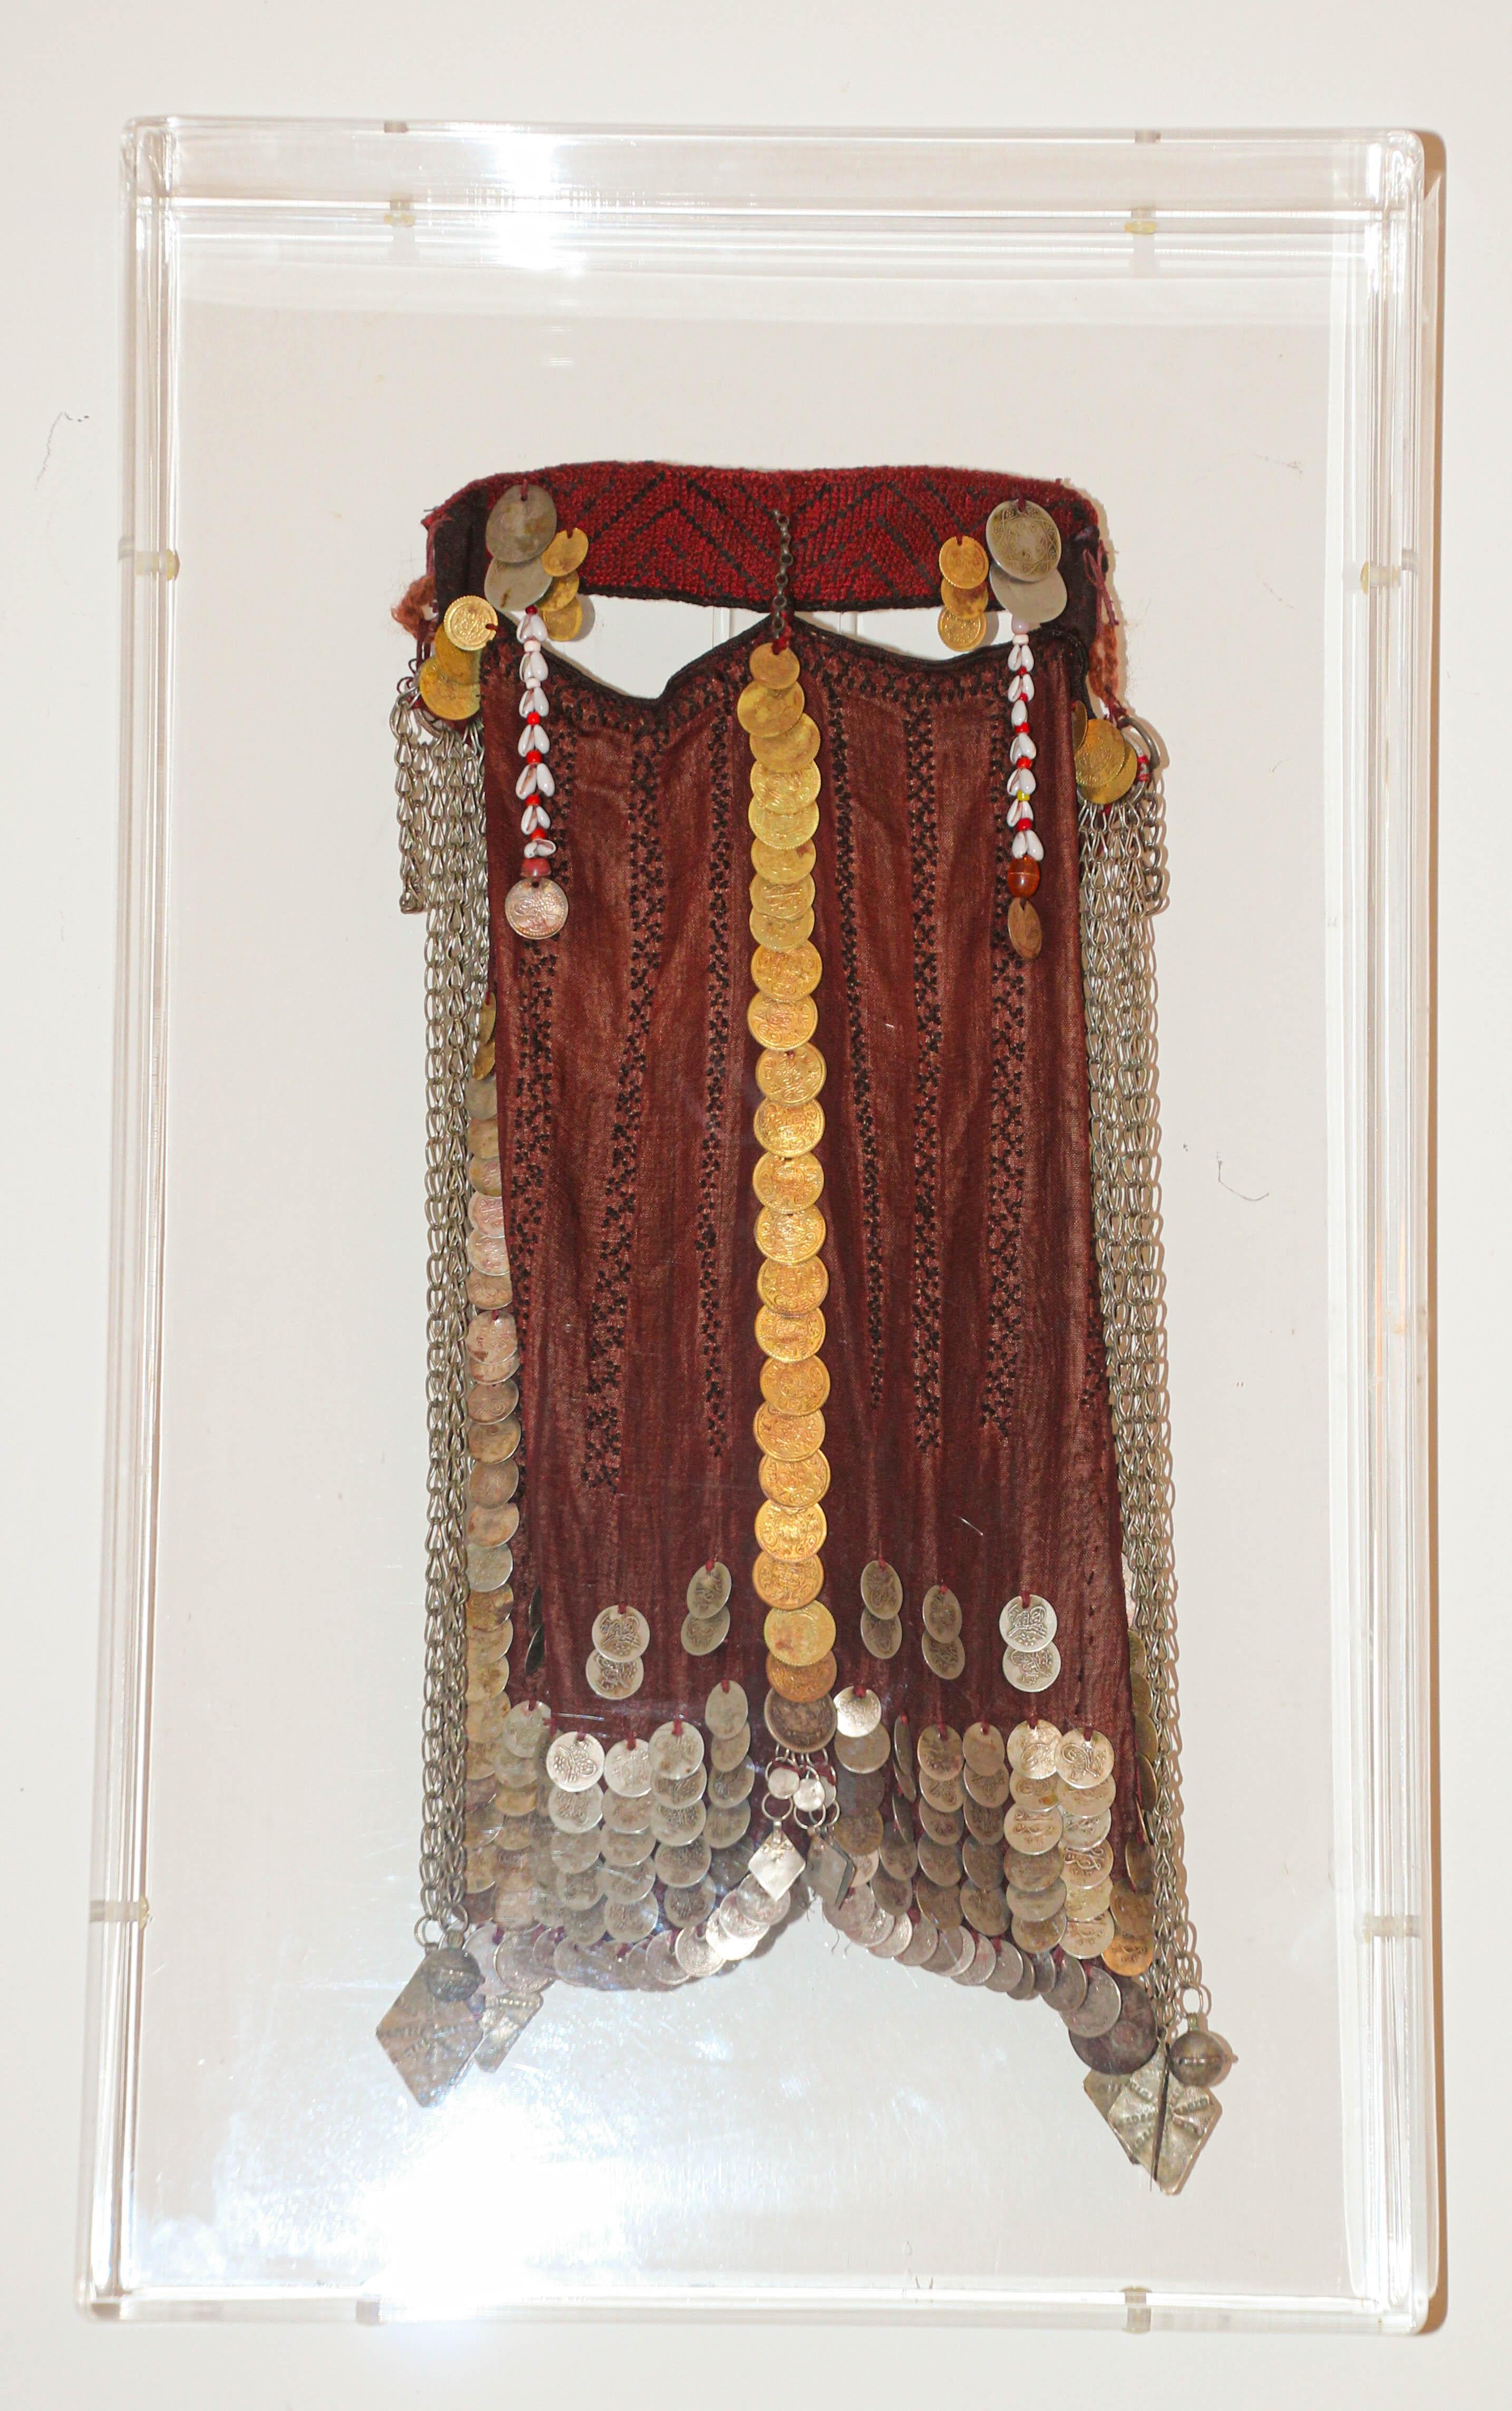 Traditionnel antique circa 1940s Collectible femmes visage voile du Sinaï bédouin désert vêtement Nikab encadré dans une boîte en lucite.
Voile facial pour femme bédouine du Moyen-Orient, de qualité muséale et bien conservé, provenant des tribus